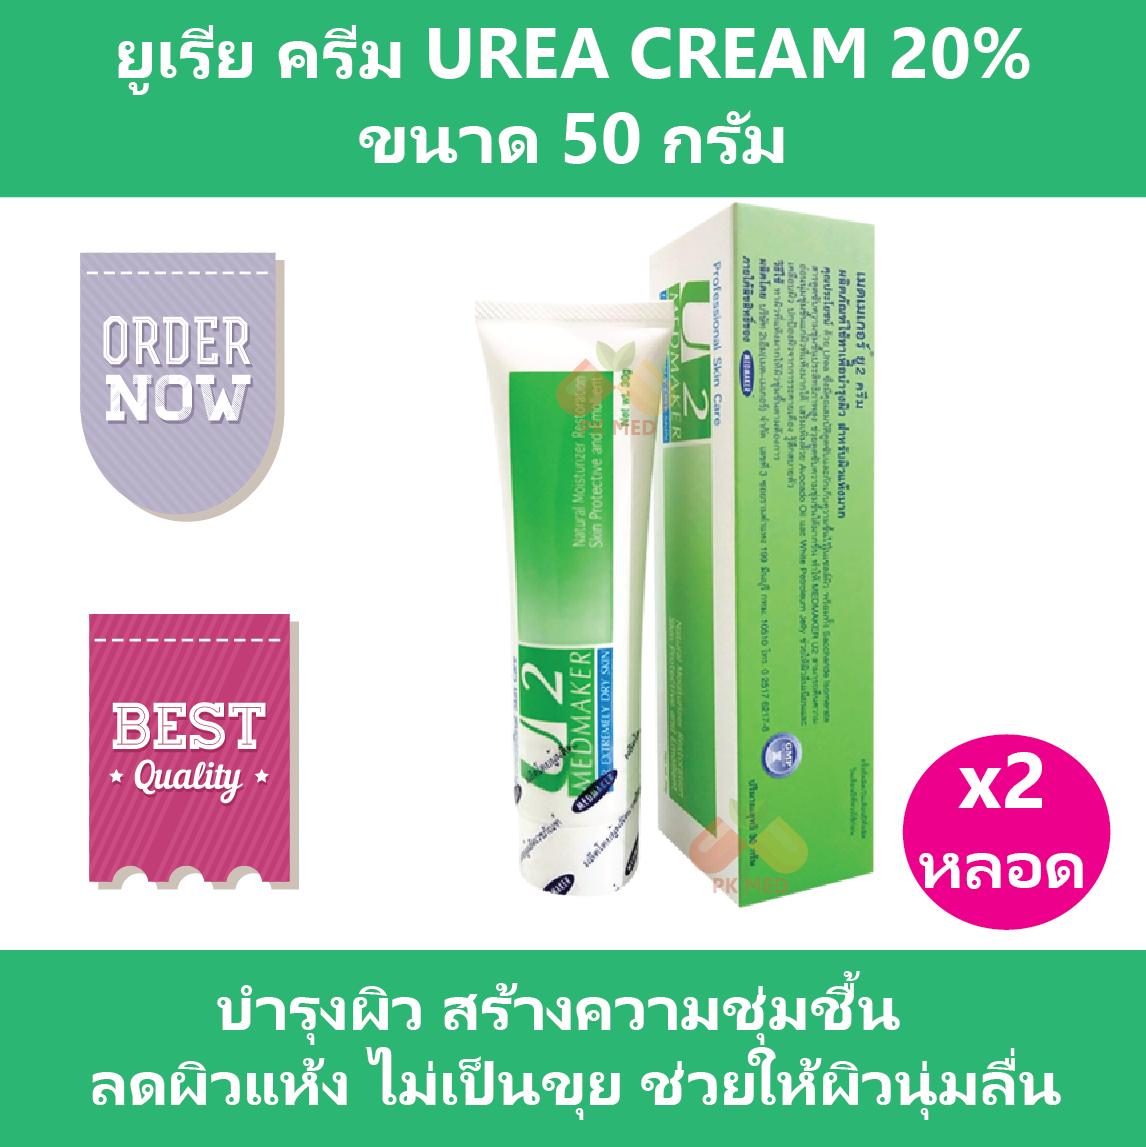 ซื้อที่ไหน (2 หลอด) ยูเรีย ครีม Urea Cream 20% เมดเมเกอร์ ยู2 ครีม Medmaker U2 Cream ขนาด 50 g สร้างความชุ่มชื้น ลดผิวแห้ง ช่วยให้ผิวนุ่ม